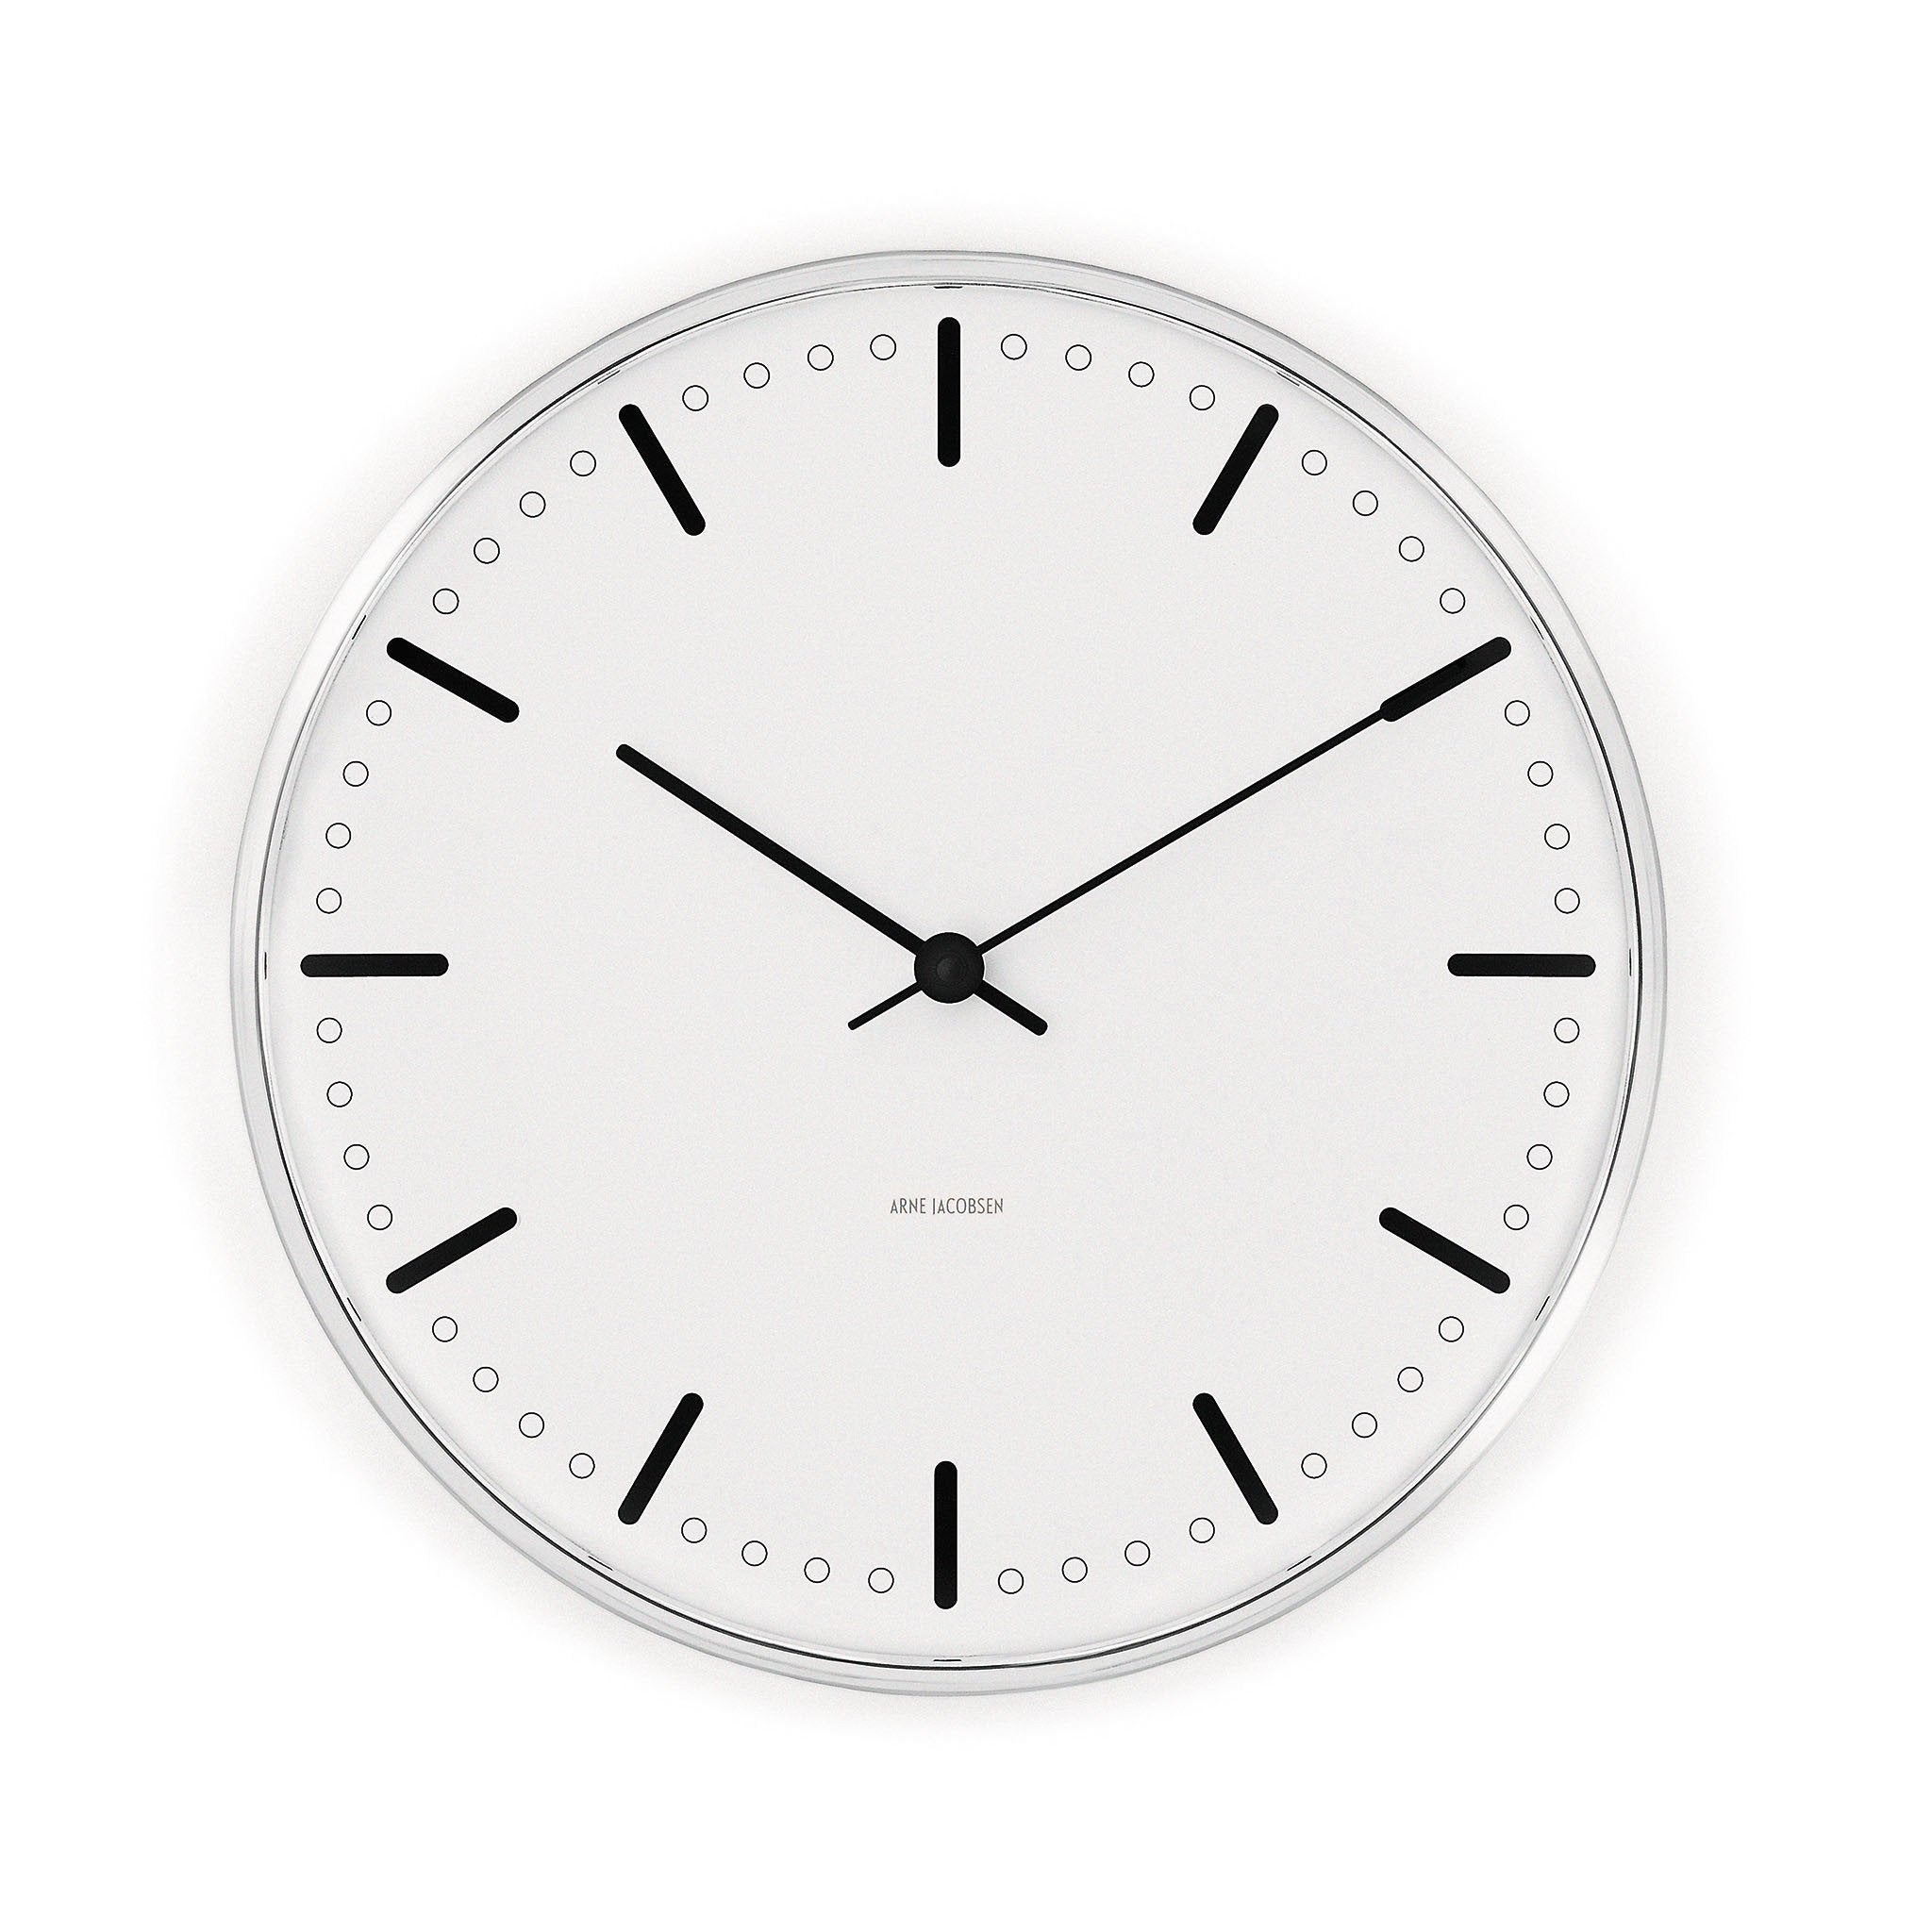 Arne Jacobsen часы